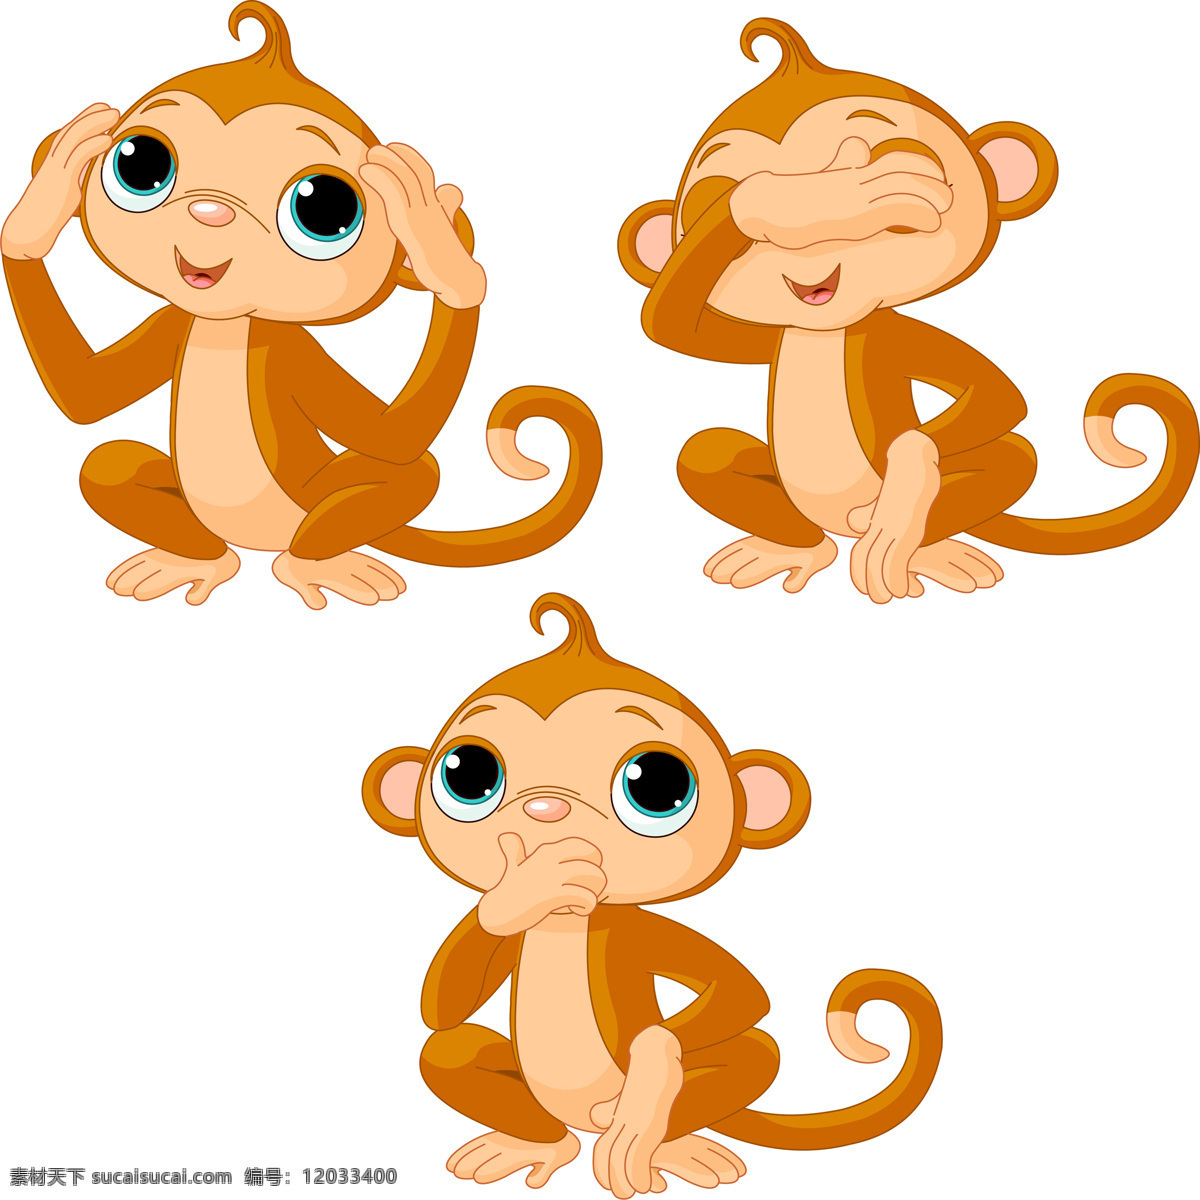 卡通猴子 卡通 猴子 动物 动漫人物 动漫动画